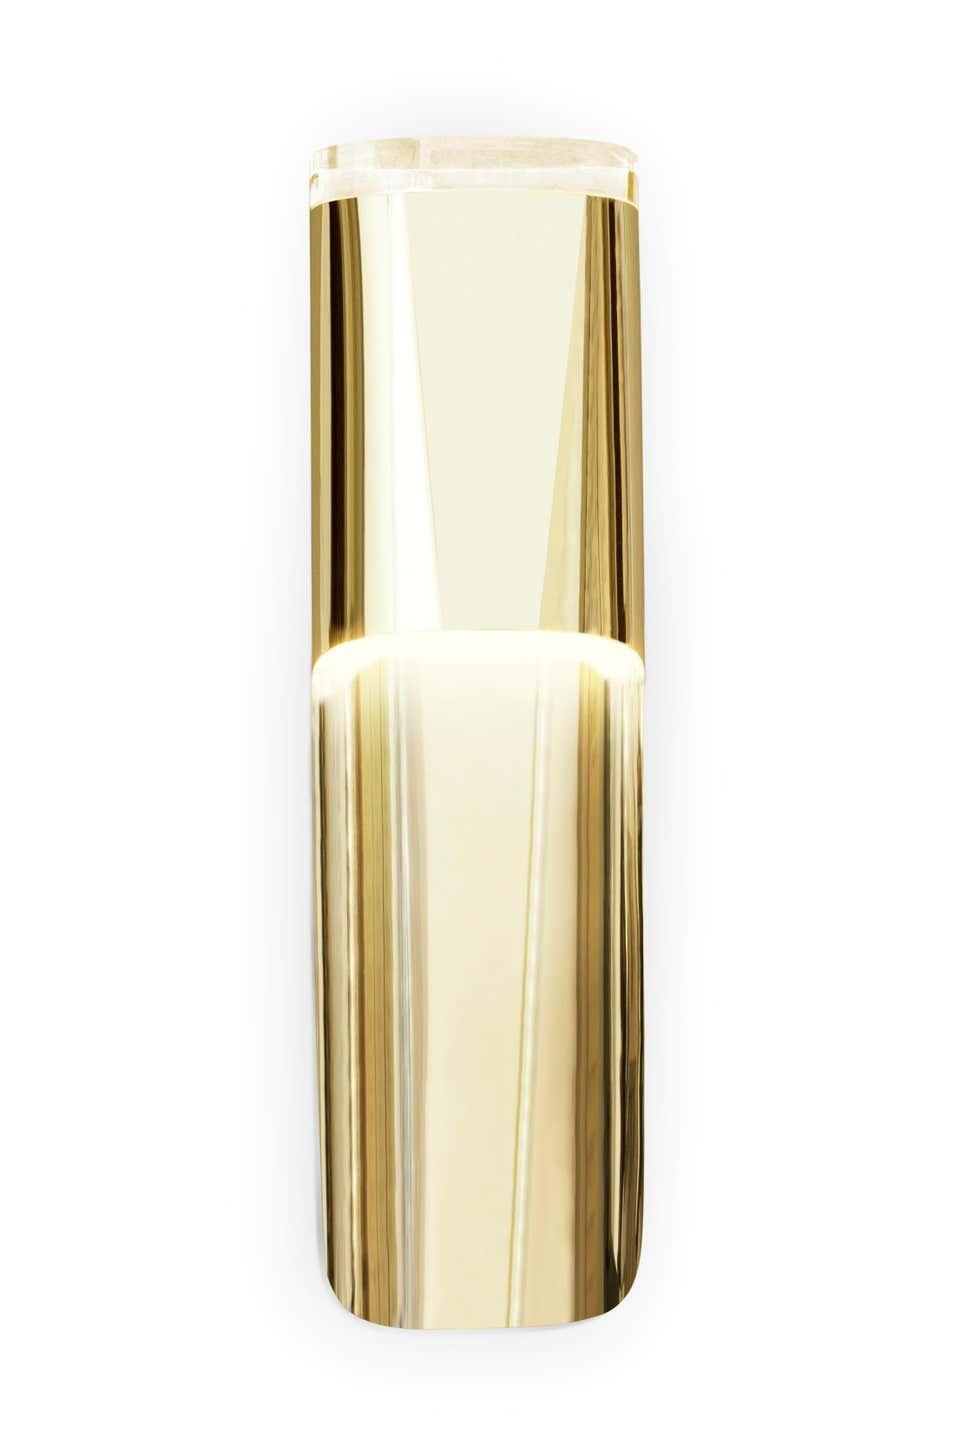 Dieser vergoldete Wandleuchter mit einem Schirm aus transparentem Acryl verleiht eine raffinierte Eleganz, die sich nach und nach offenbart.
Vergoldet mit Schirm aus transparentem Akrilikat
Maße: Höhe 21,07 in. (53,5 cm)
Breite 5.91 in. (15